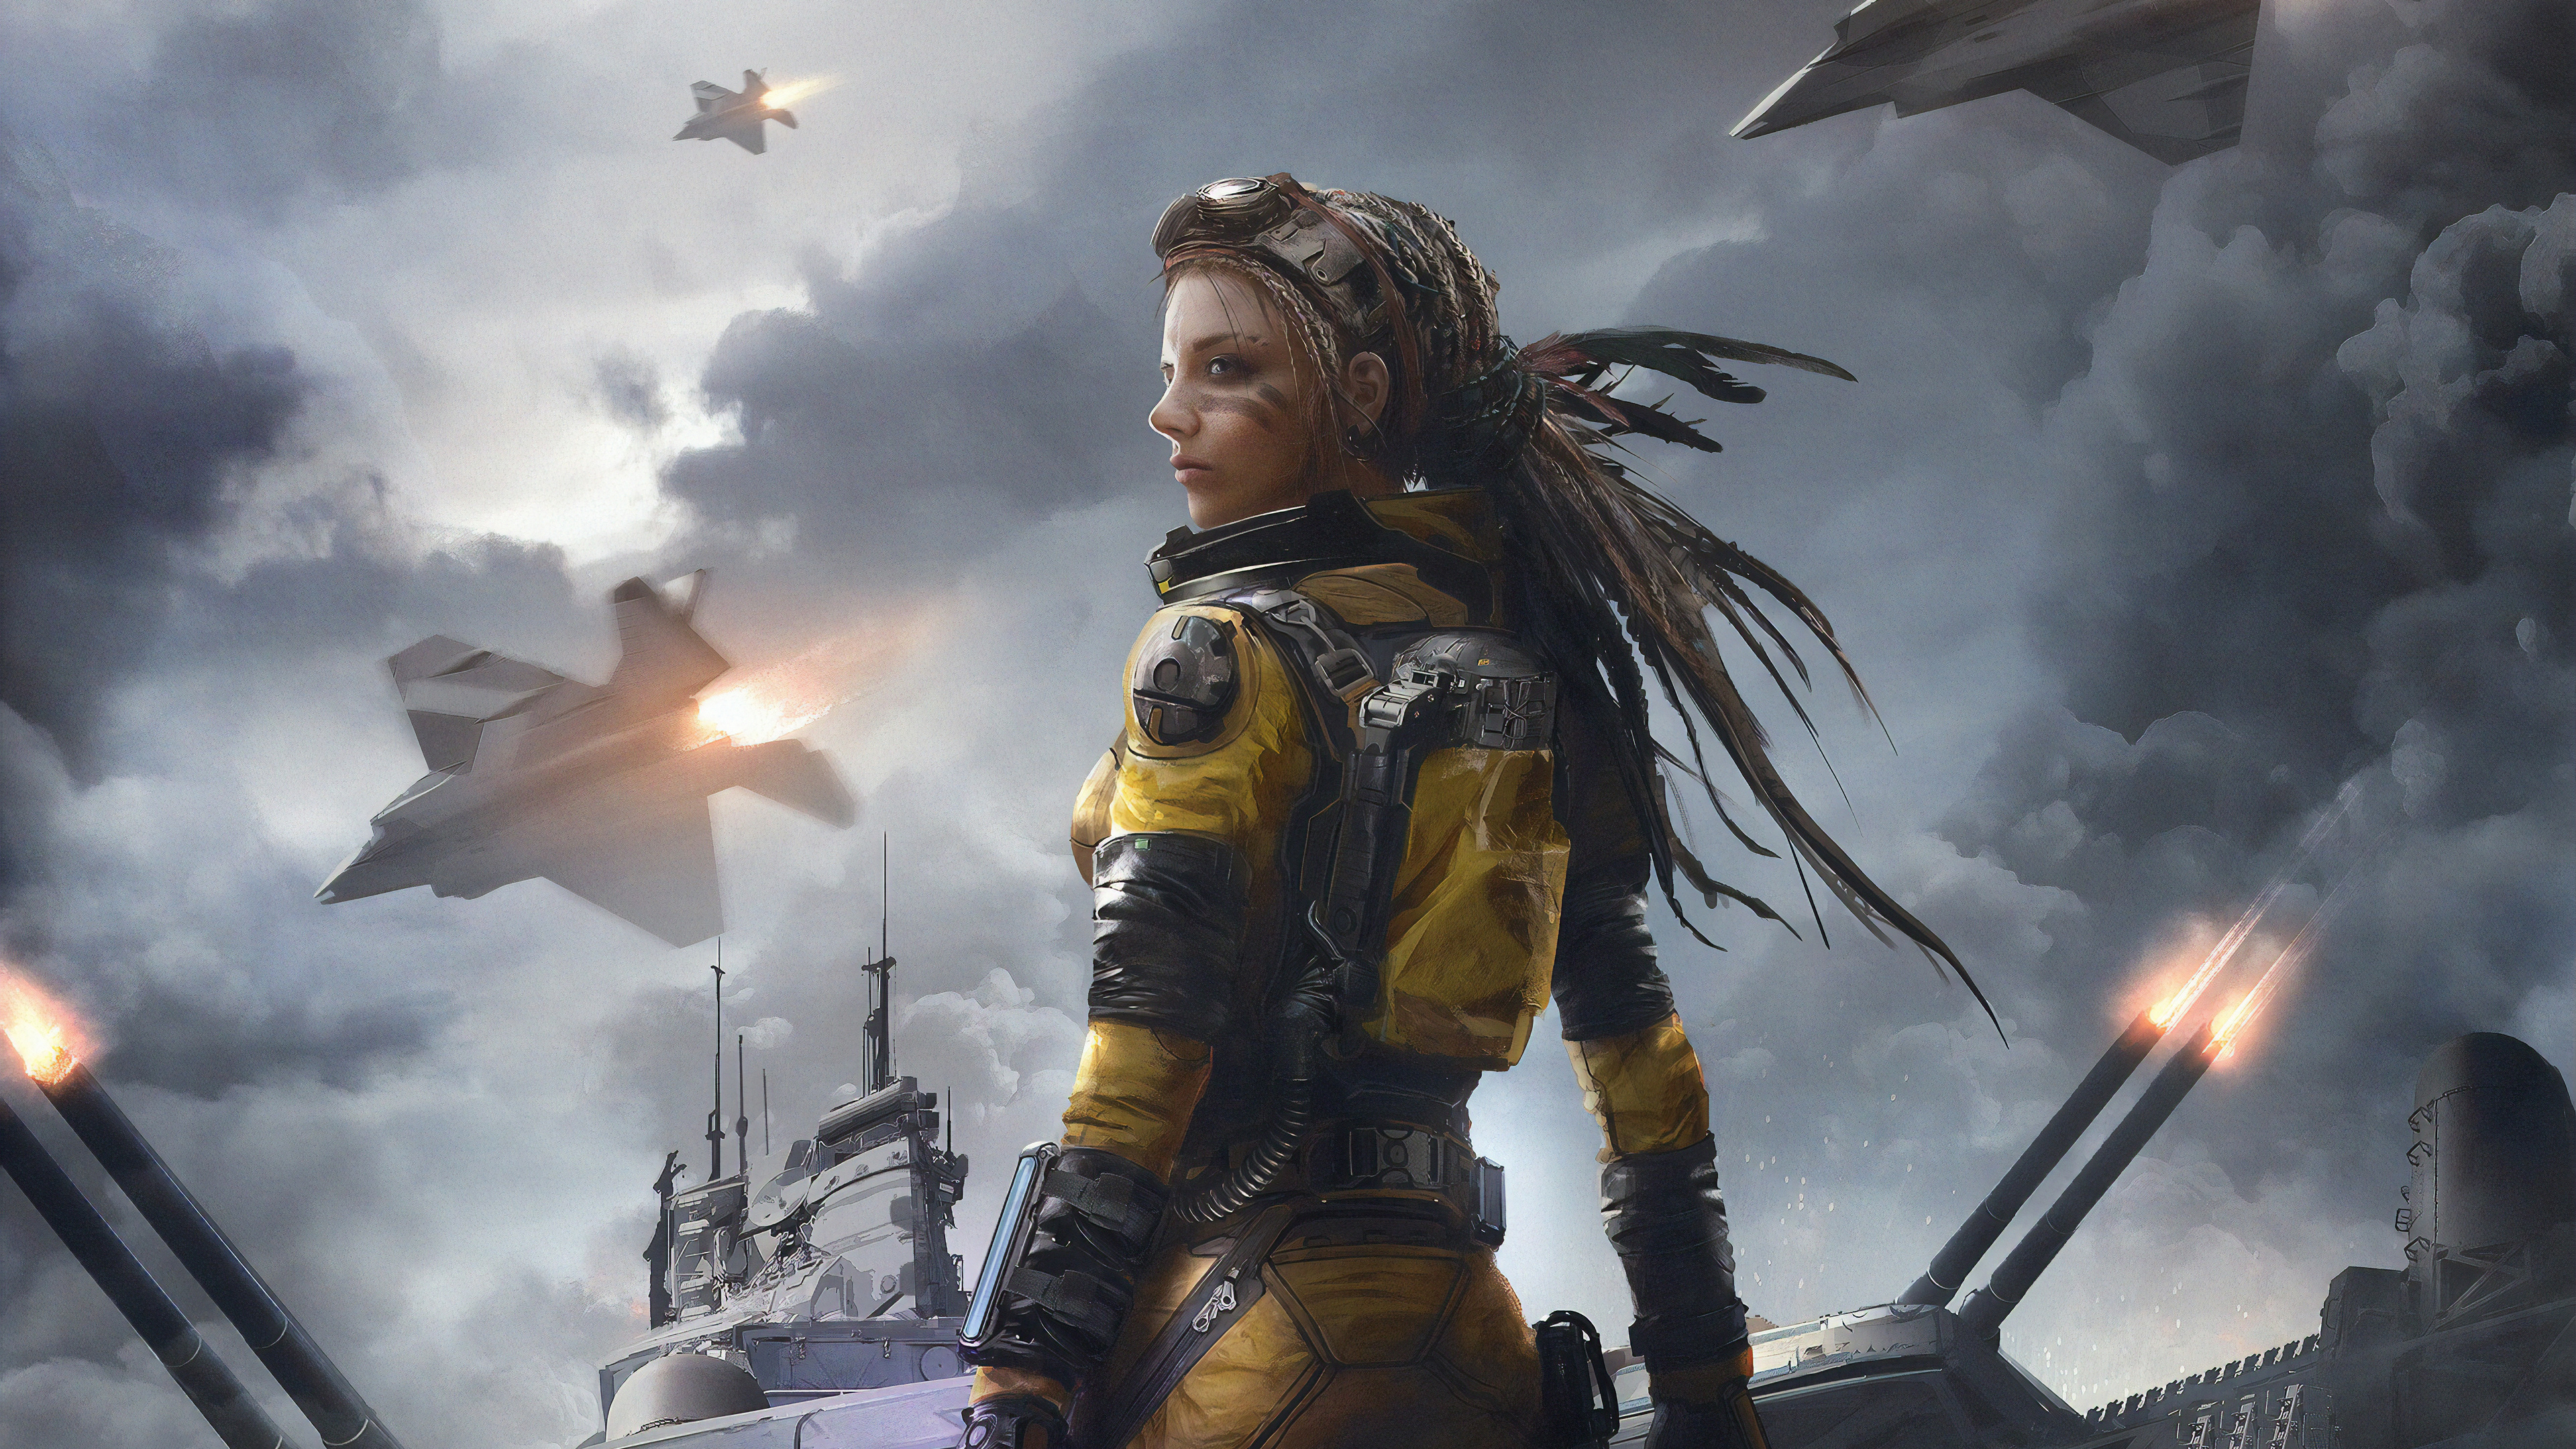 sci fi, women warrior, dreadlocks, jet fighter, woman warrior